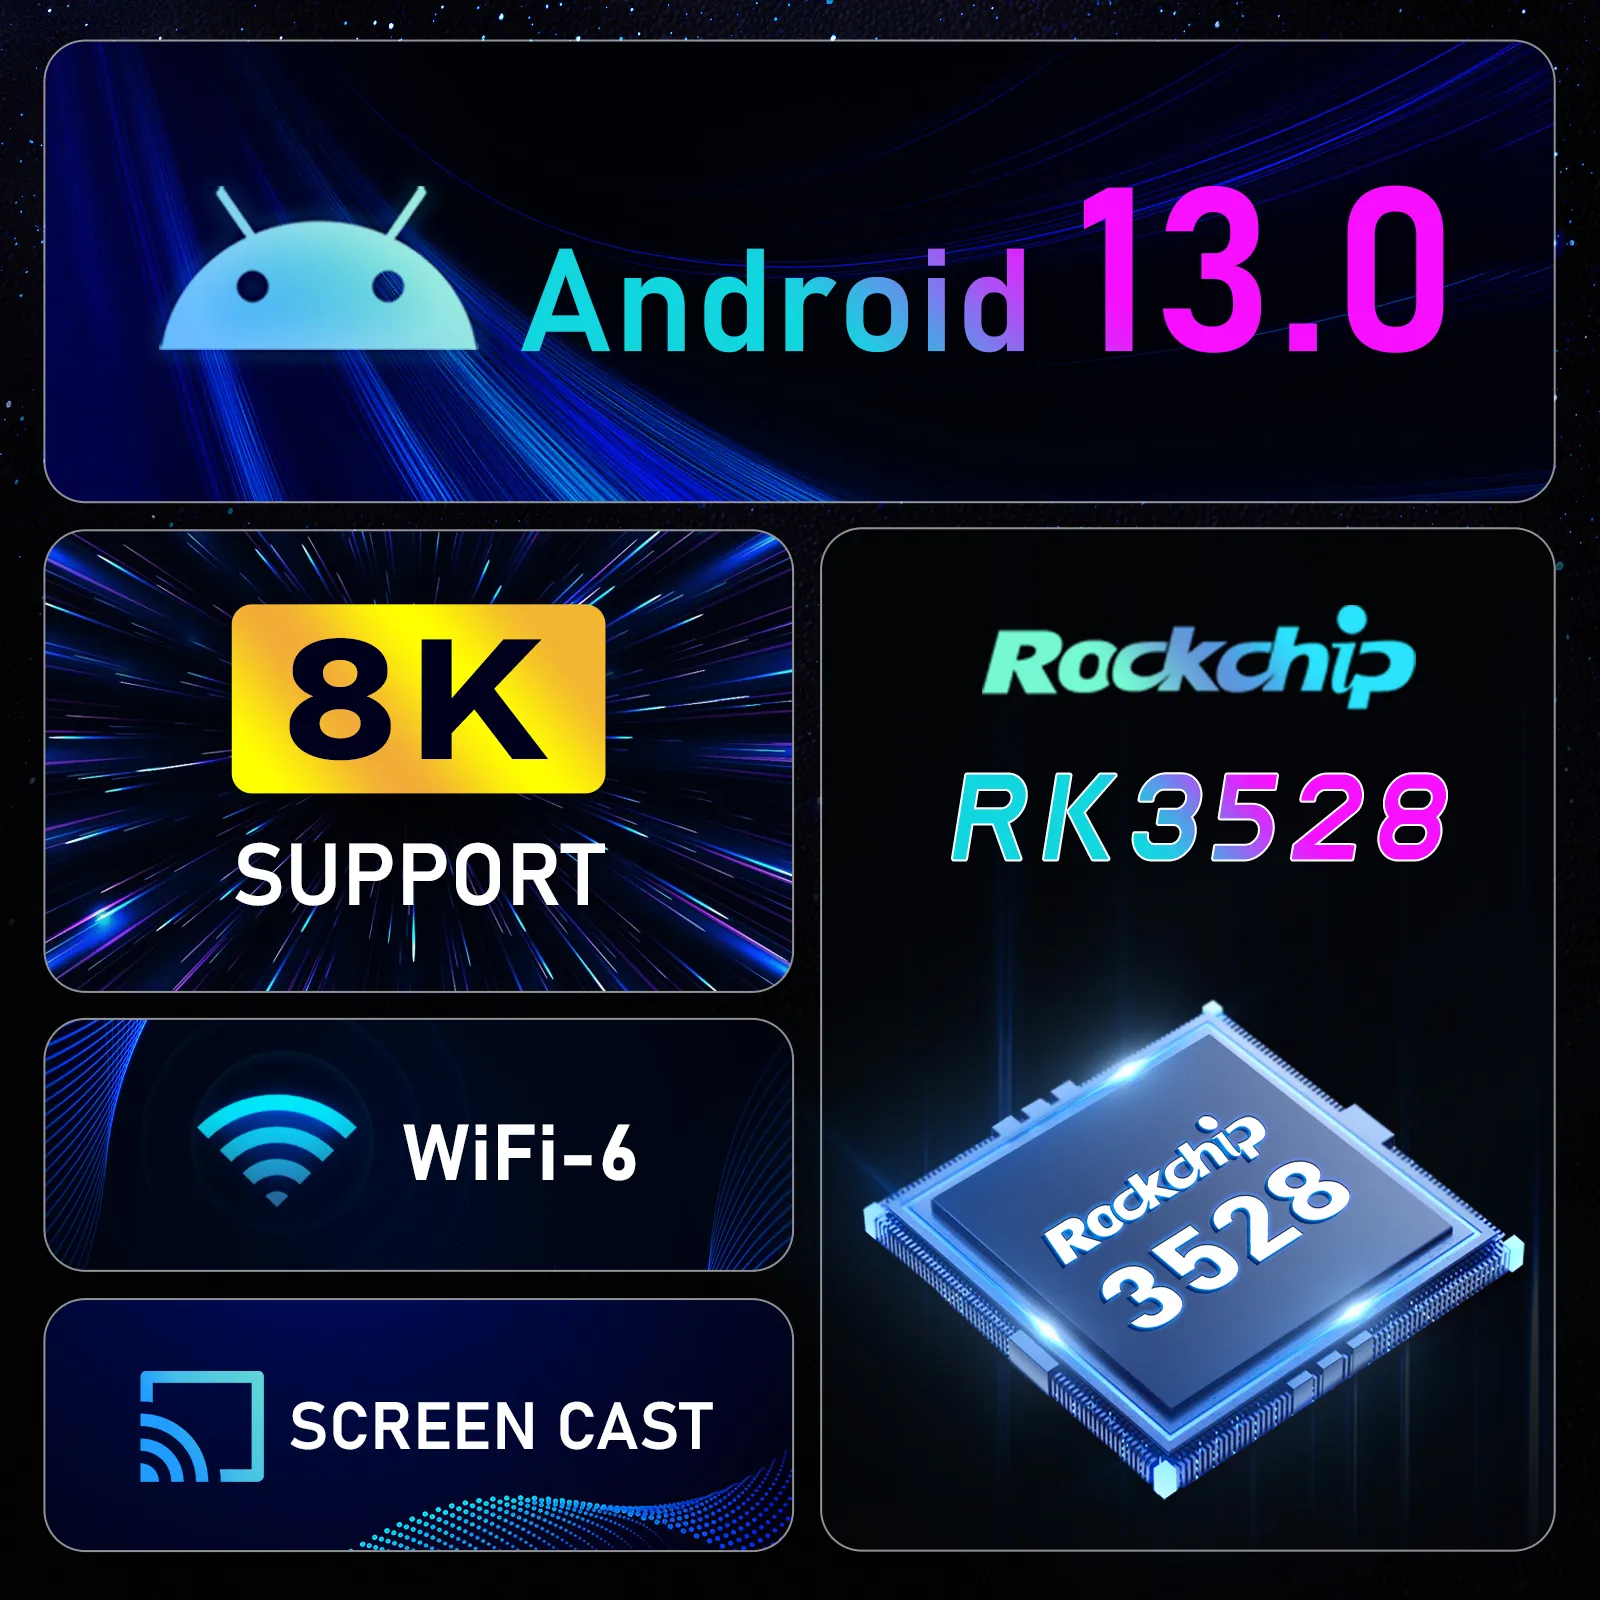 Android TV Box 11.0, 4GB RAM 32GB ROM RK3318 Quad Core 64bit Android Box  Soporta 2.4G+5G Dual WiFi Bluetooth 4.0 USB 3.0 Ultra 3D 4K Smart TV Box